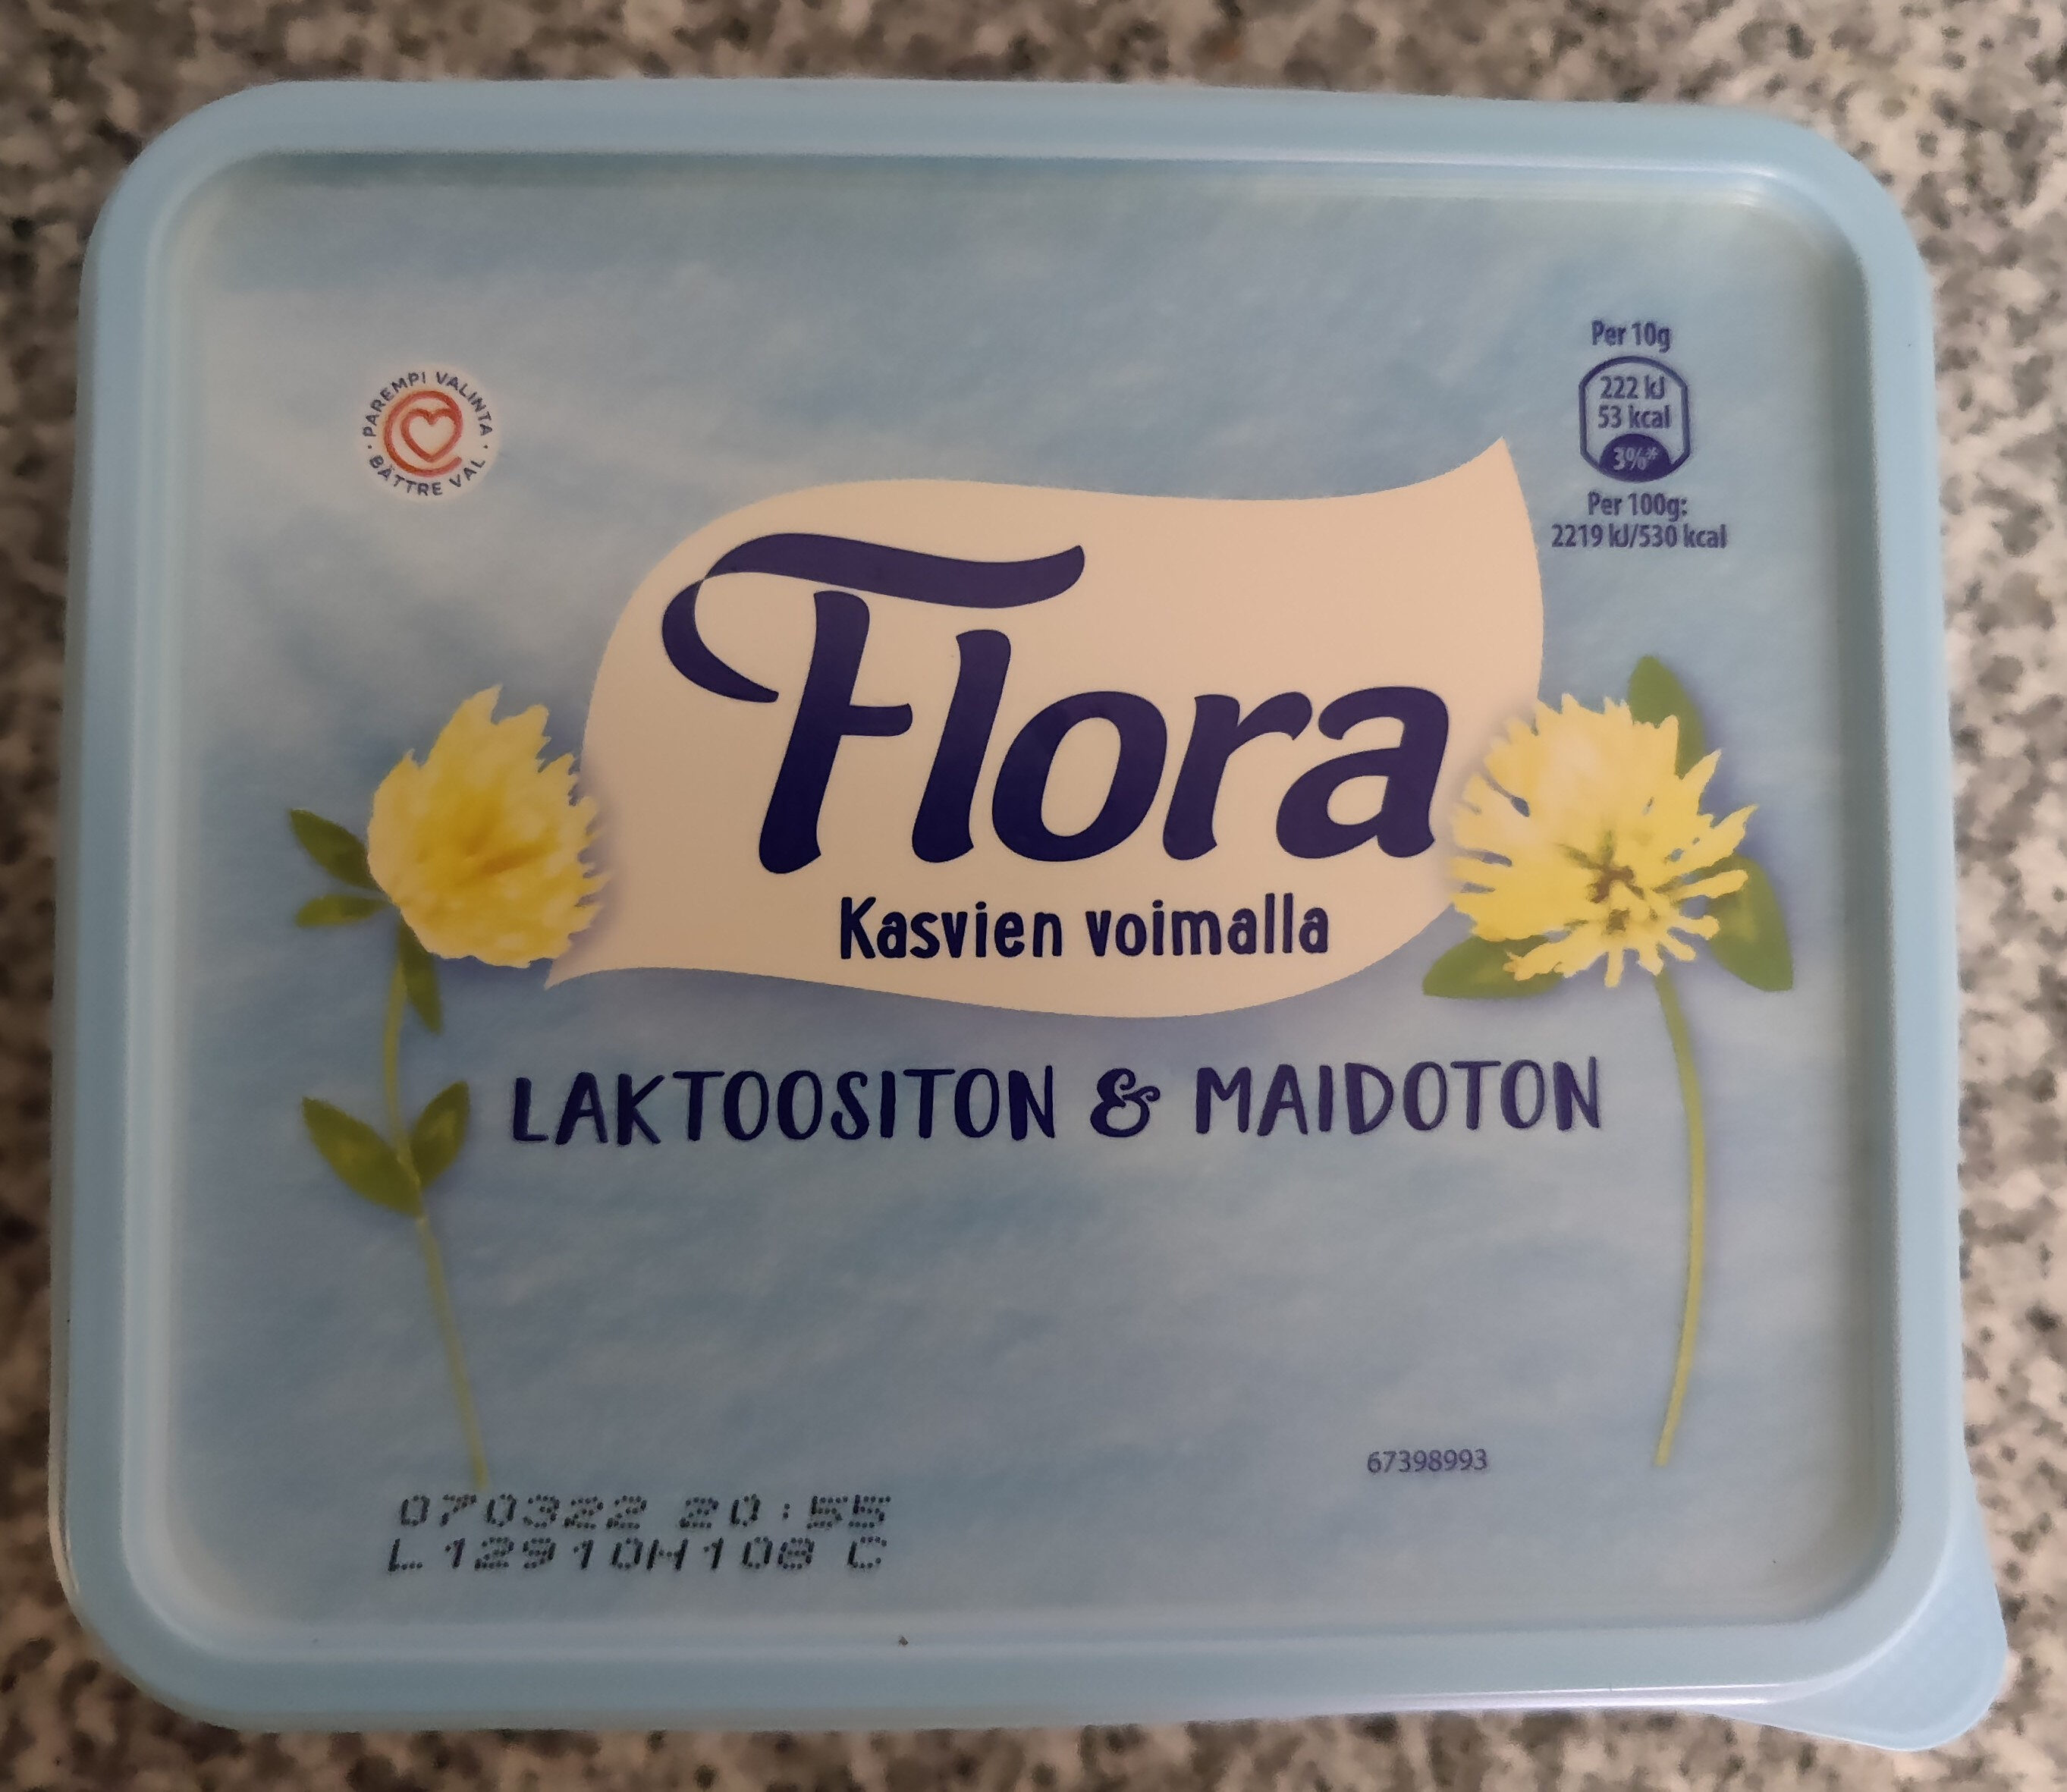 Flora laktoositon ja maidoton - Tuote